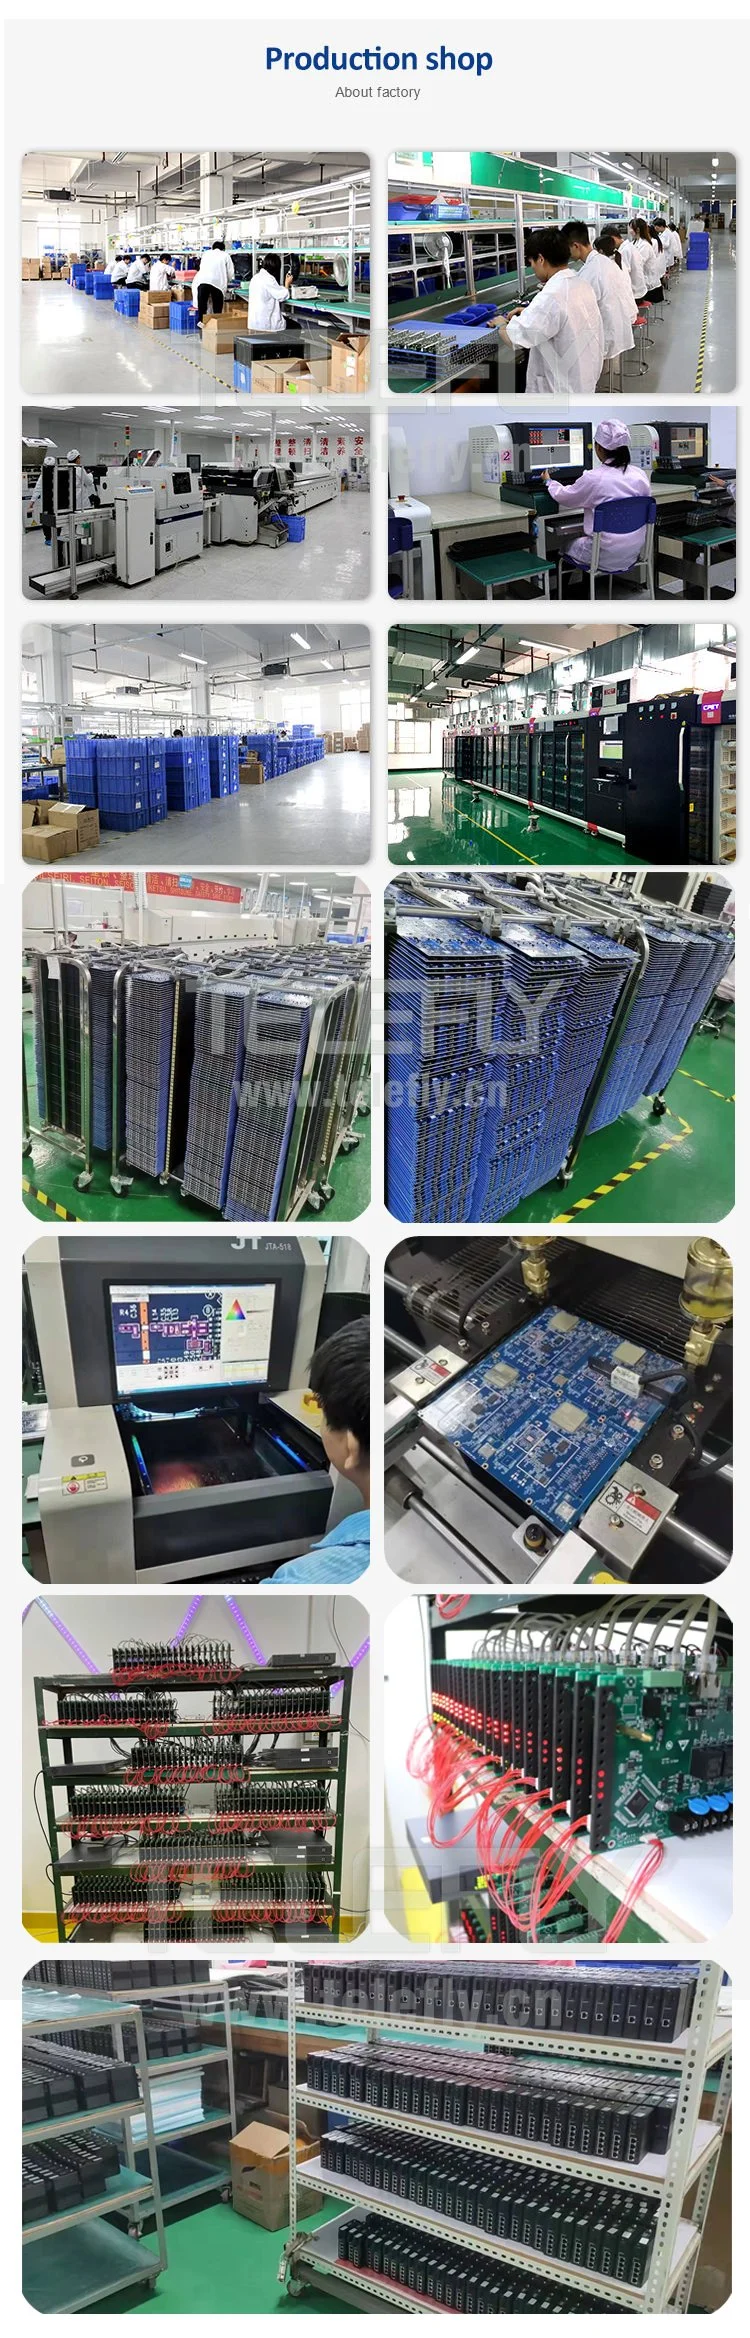 New Original IC Chips Infineon Sak-Tc277t-64f200s Ca MCU 32-Bit Aurix Tc27xt 200MHz Tricore Risc 4MB Eflash 472kb Sram 292-Pin Lfbga in Stock